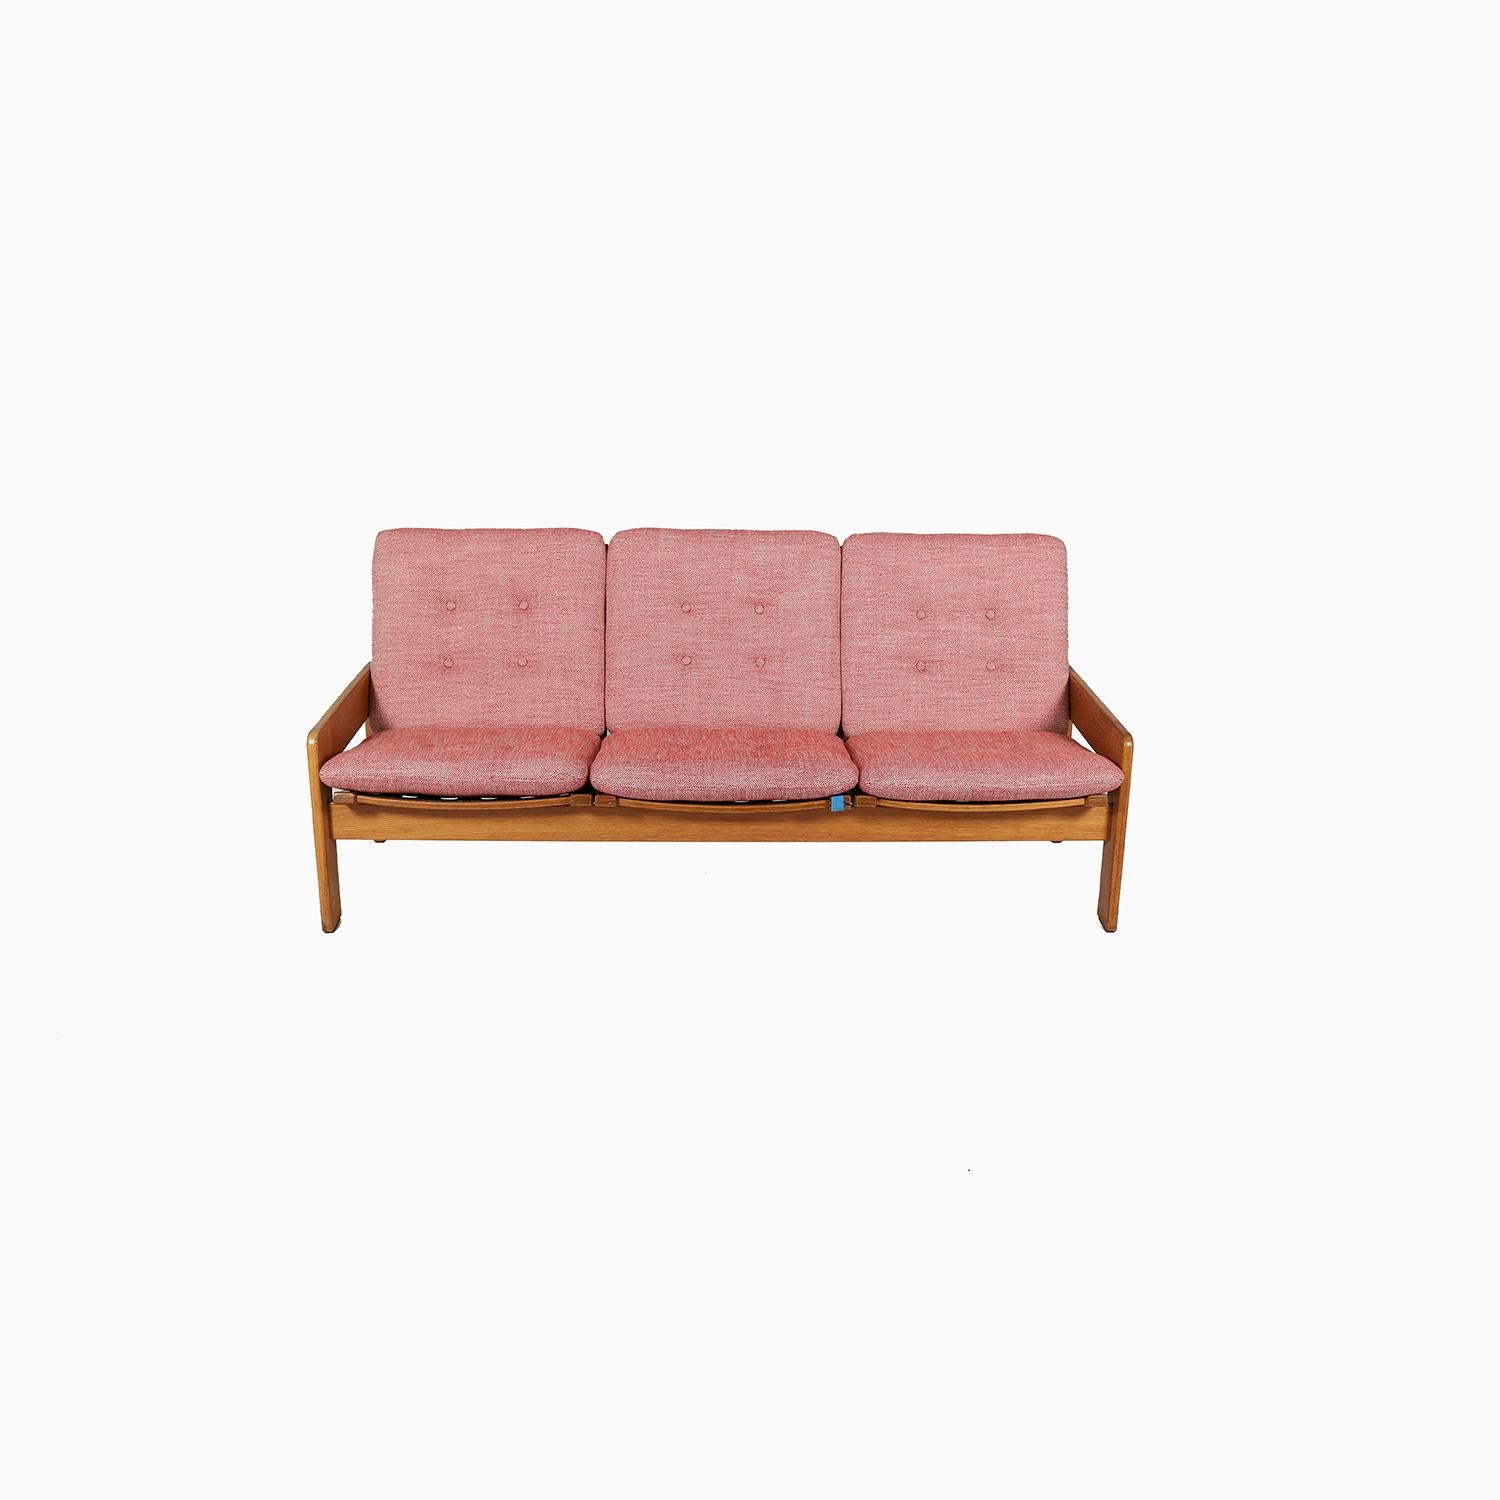 Ein schwer zu findendes Dreisitzer-Sofa, entworfen von einem der bekanntesten schwedischen Designer, Yngve Ekstrom. Rahmen aus patinierter Eiche und neu gepolstert mit Pollack Textiles 